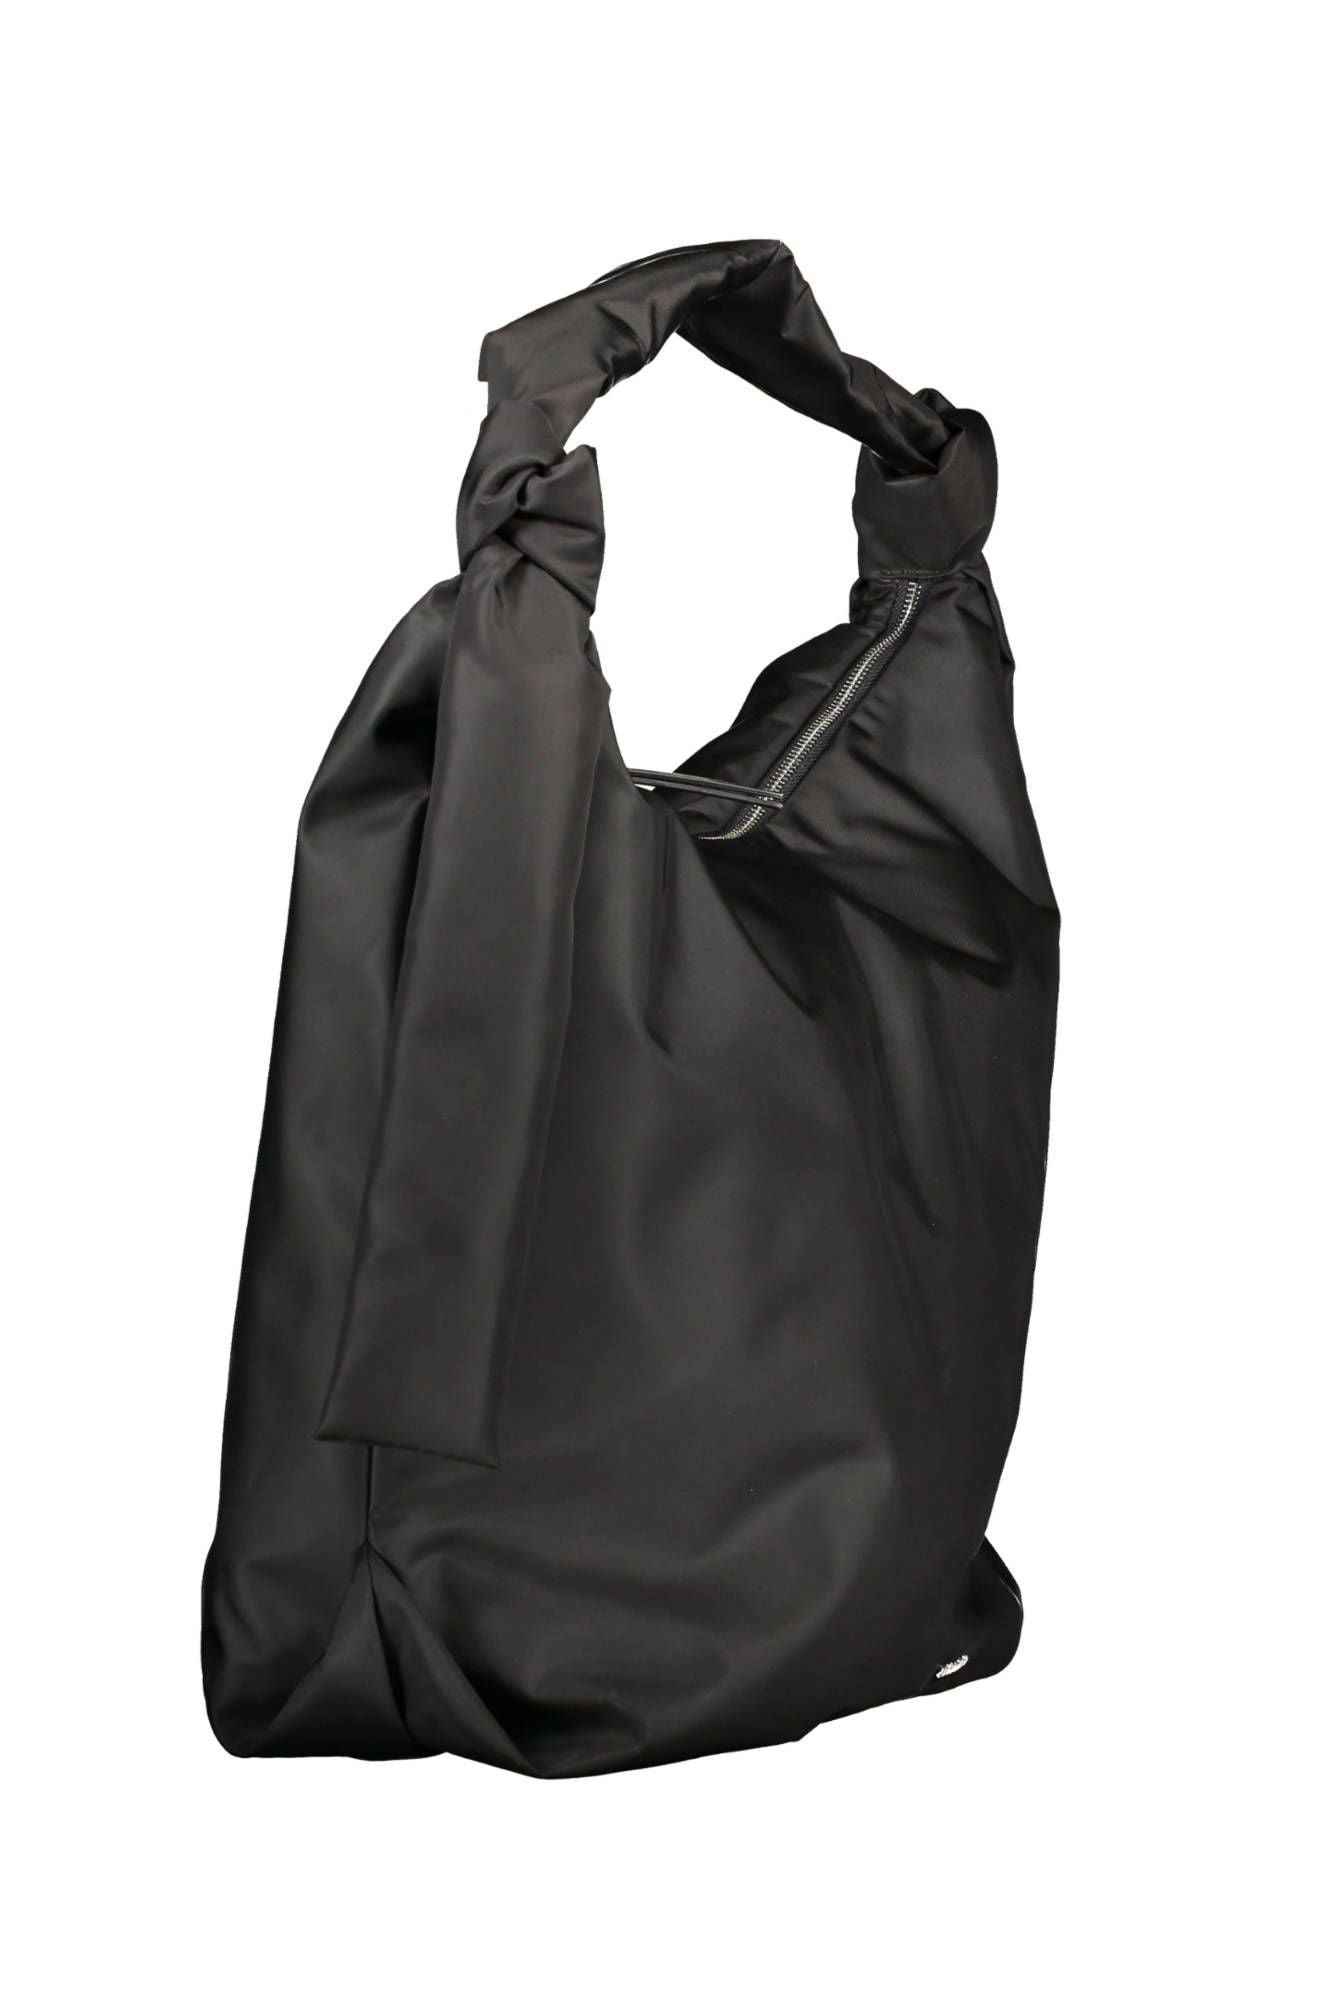 Elegant Black Shoulder Bag with Logo Appliqué